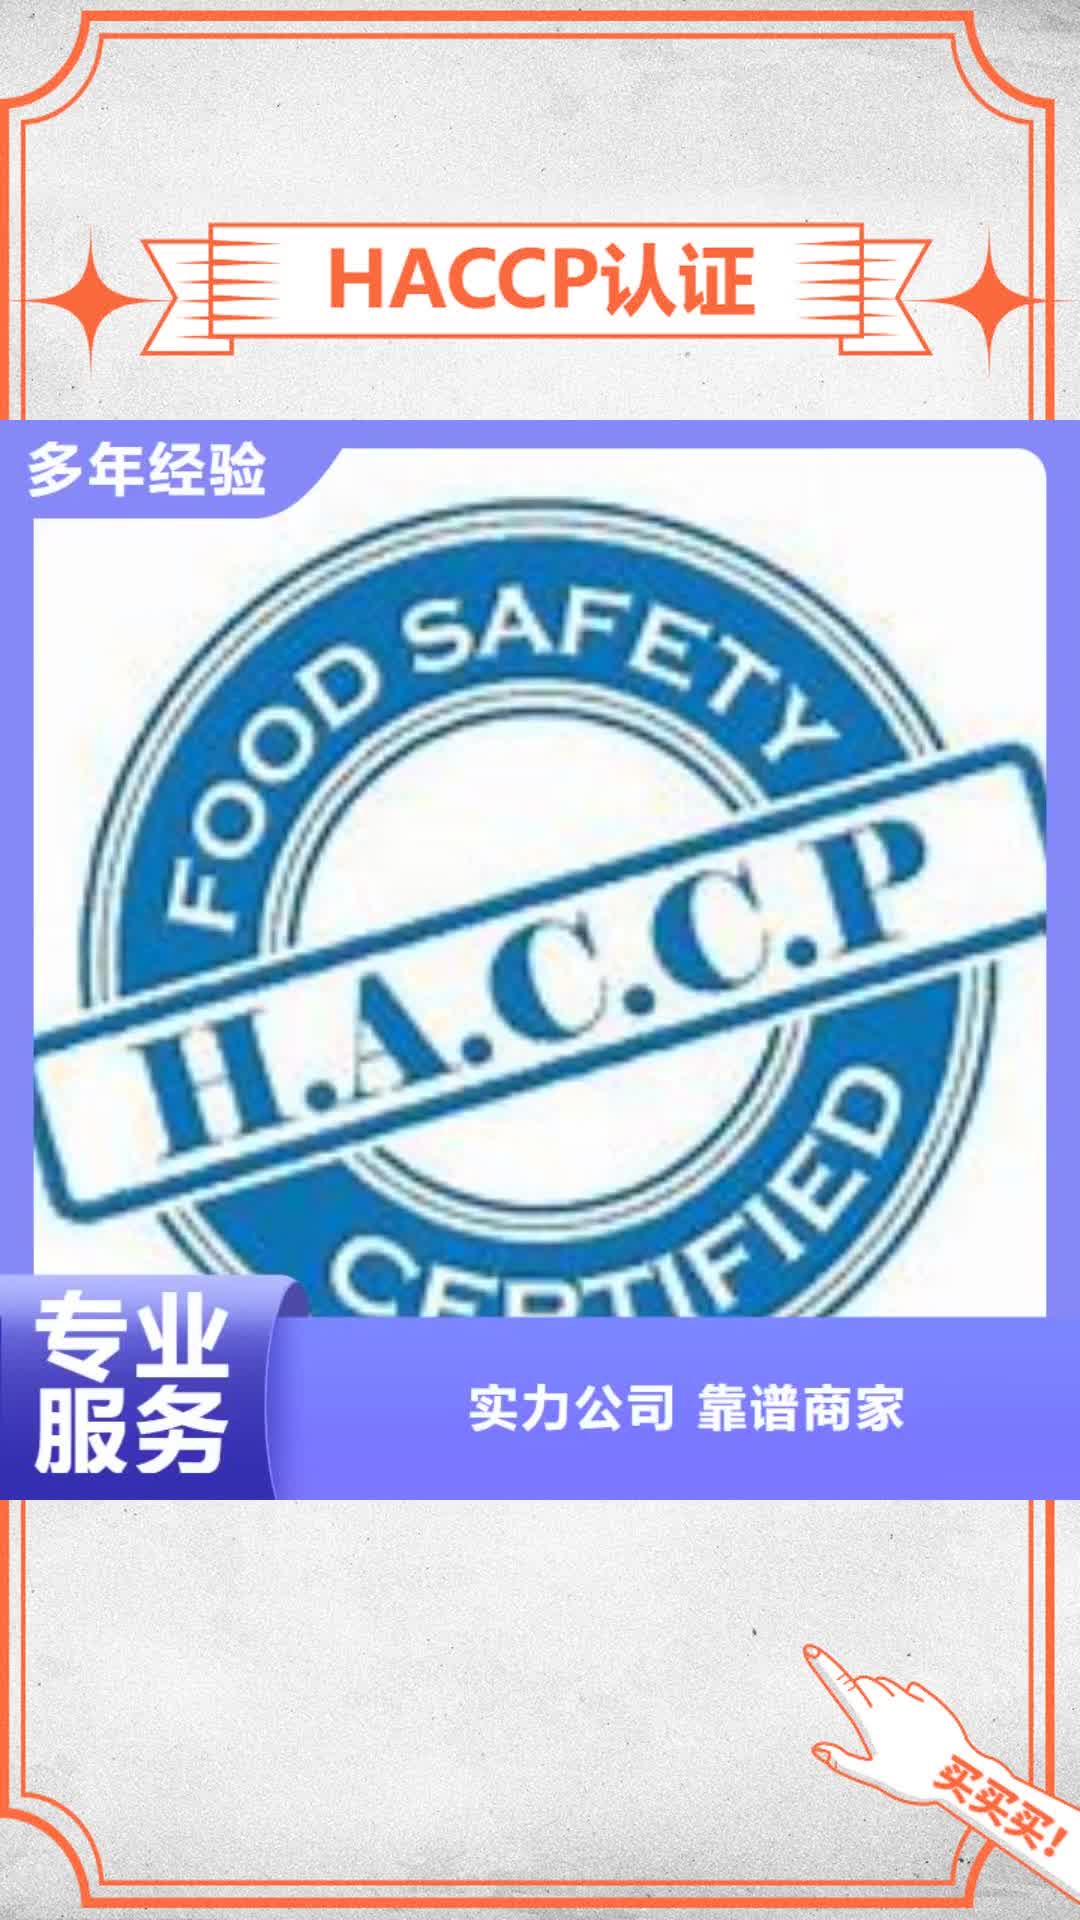 青岛 HACCP认证 【知识产权认证/GB29490】一站式服务